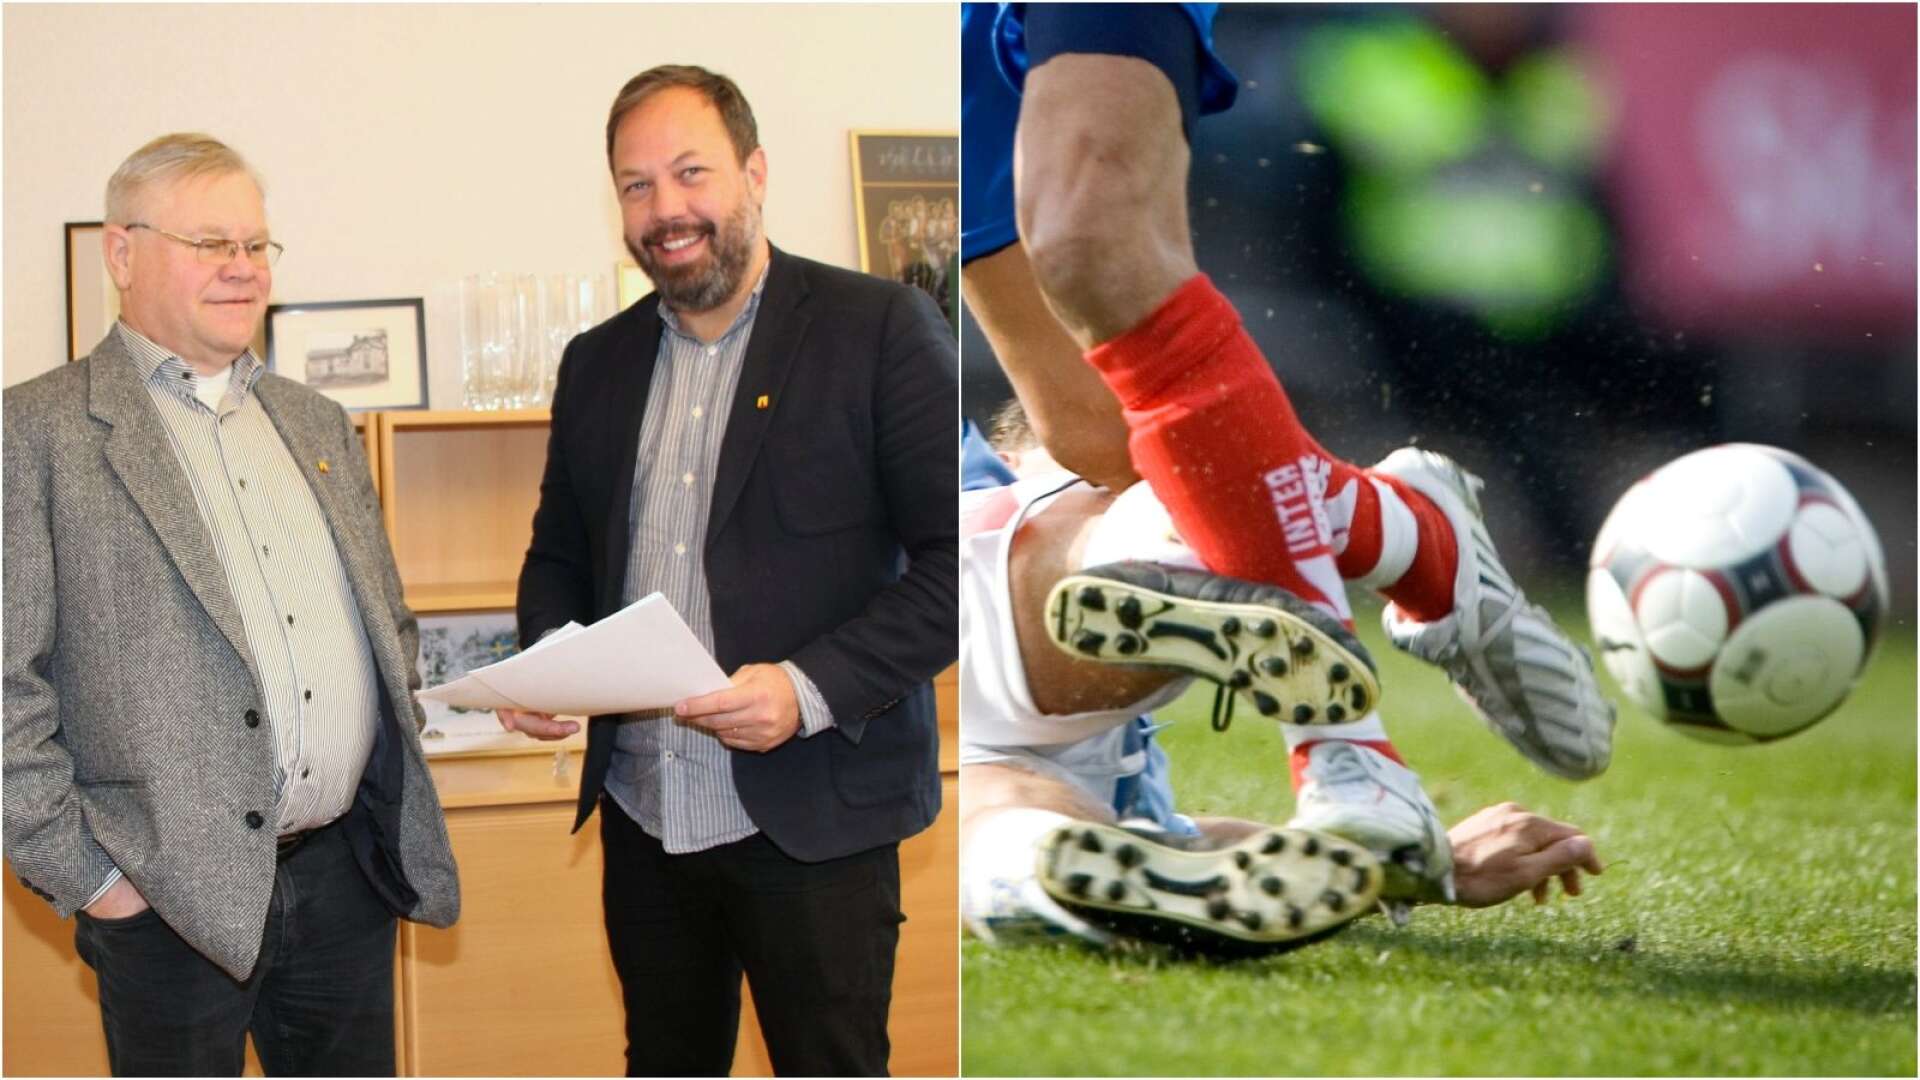 Kommunchef Jan Lilja och kommunalrådet Jens Fischer (OR) kan vara ett par av fotbollsspelarna när politiker och tjänstemän ska drabba samman i en fotbollsmatch